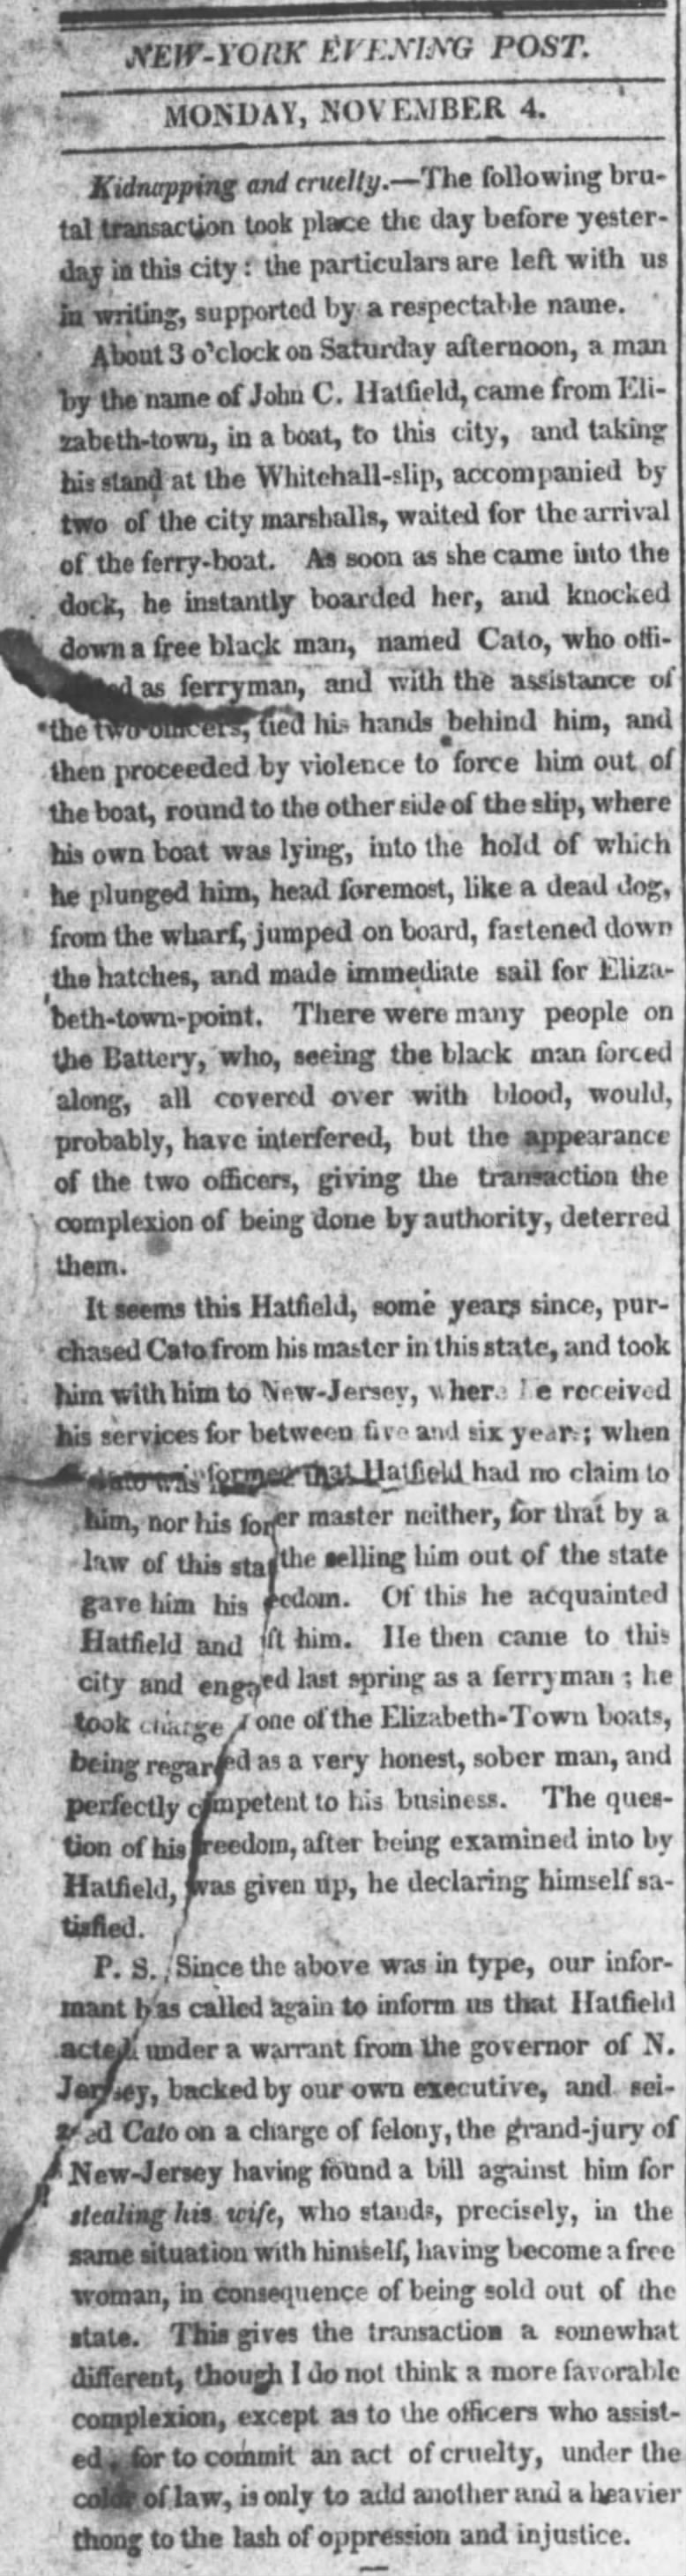 Nov 4 1816, NY Evening Post
John C Hatfield and slave Cato